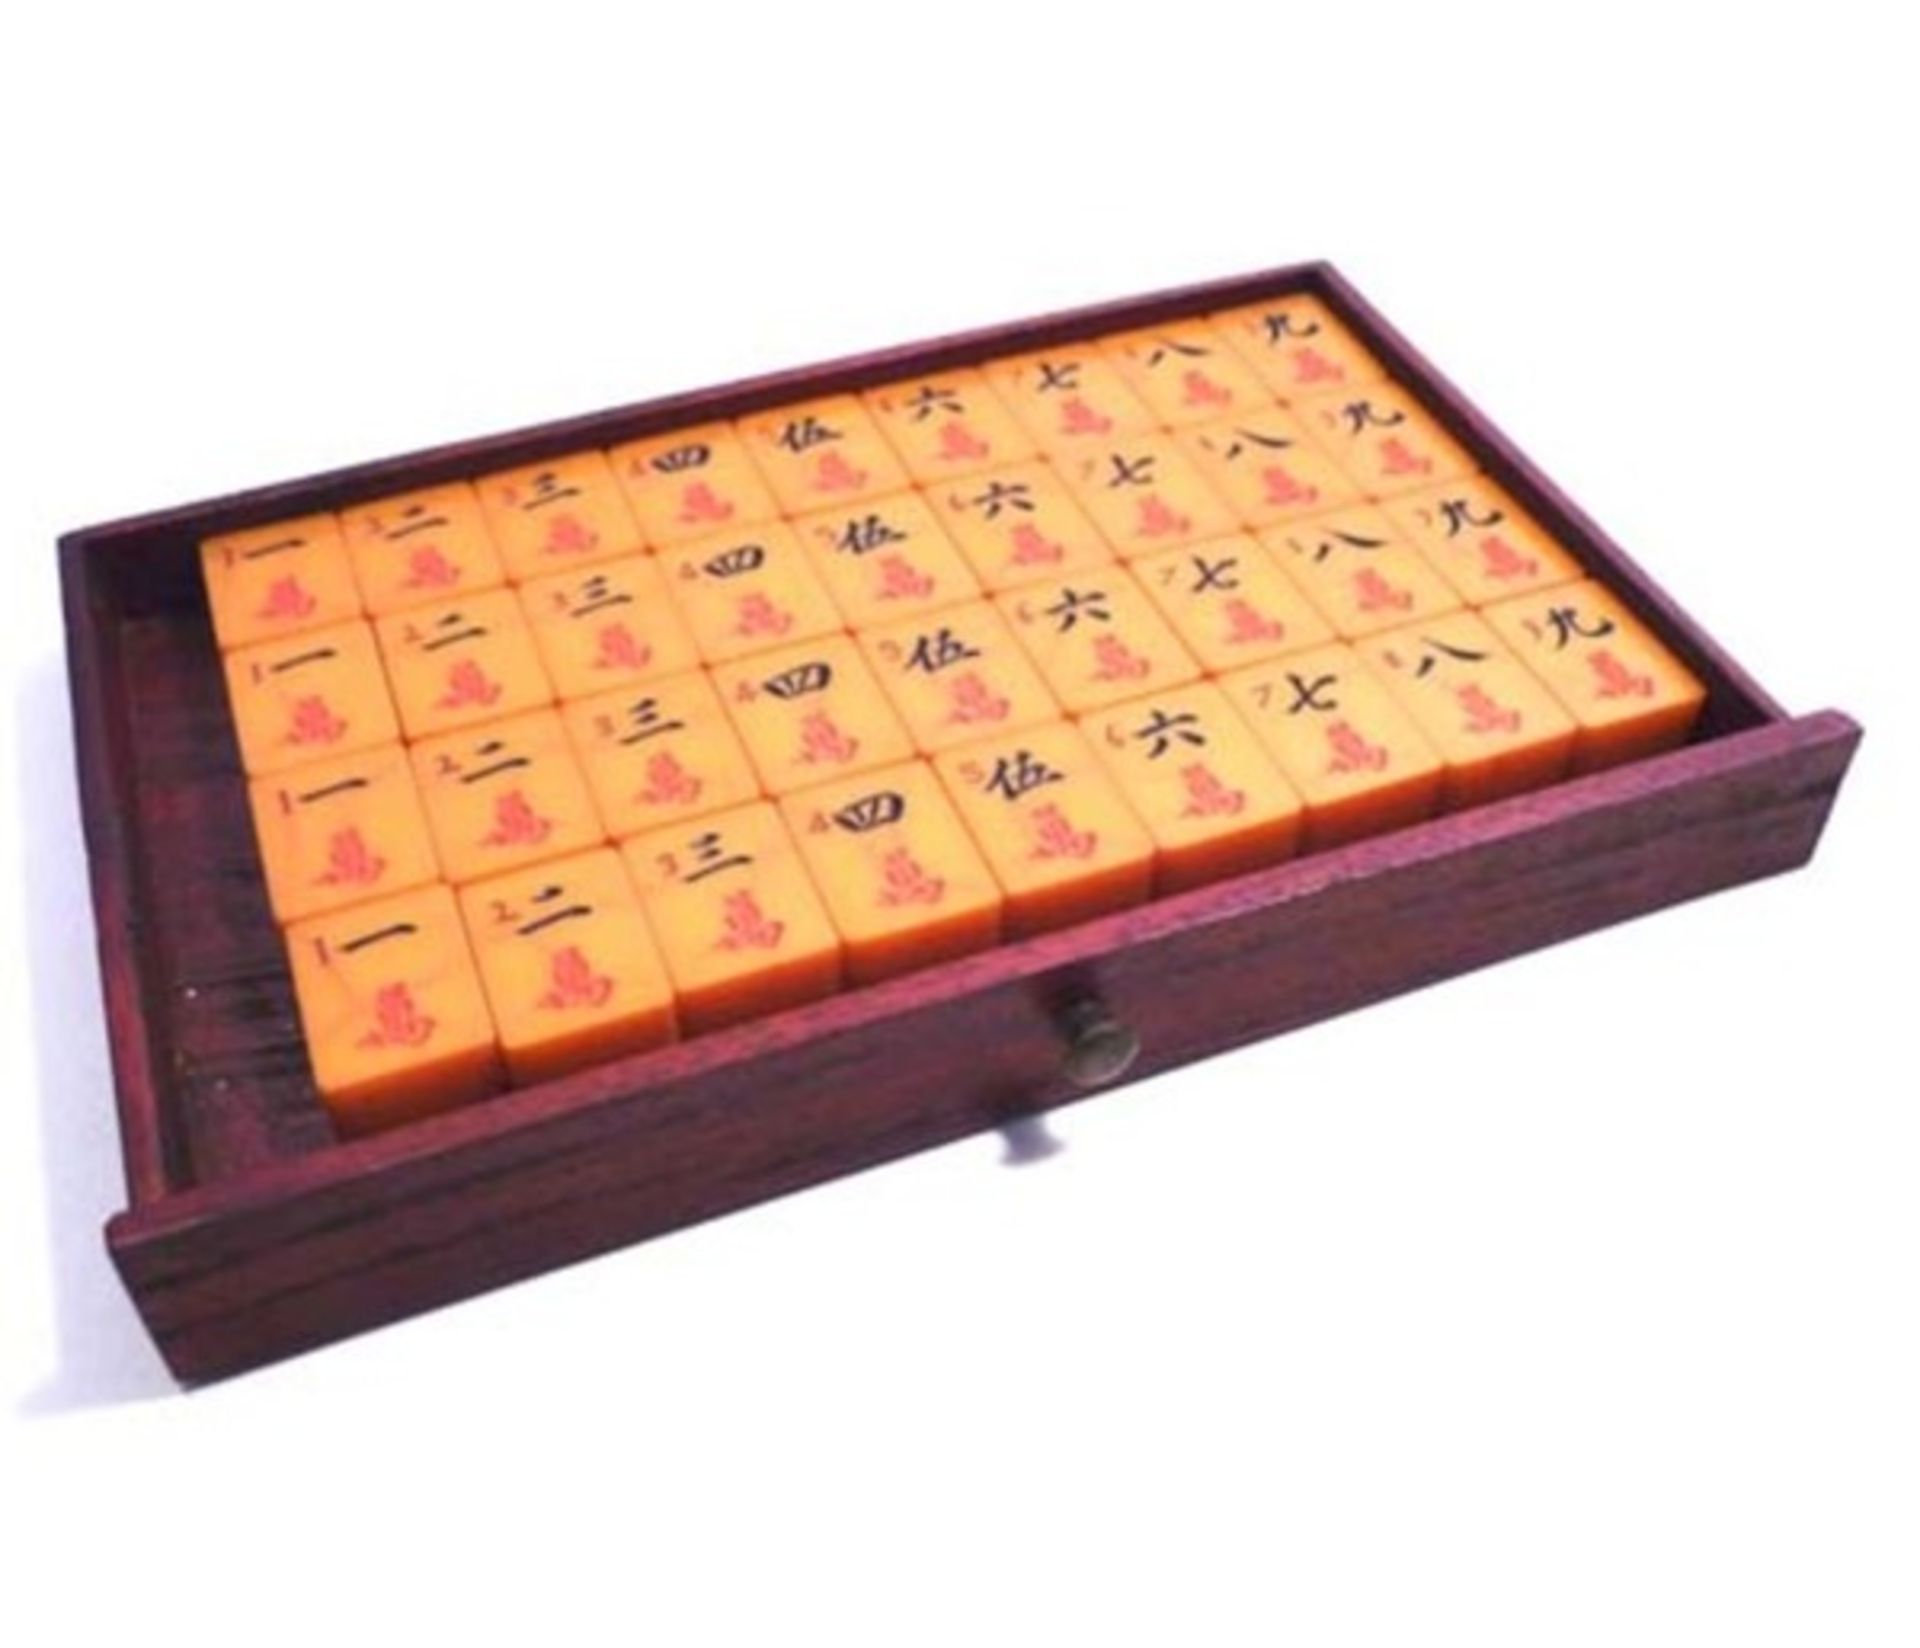 (Mahjong) Mahjong kunststof, traditionele 5-laden doos, ca. 1923 - Bild 9 aus 13